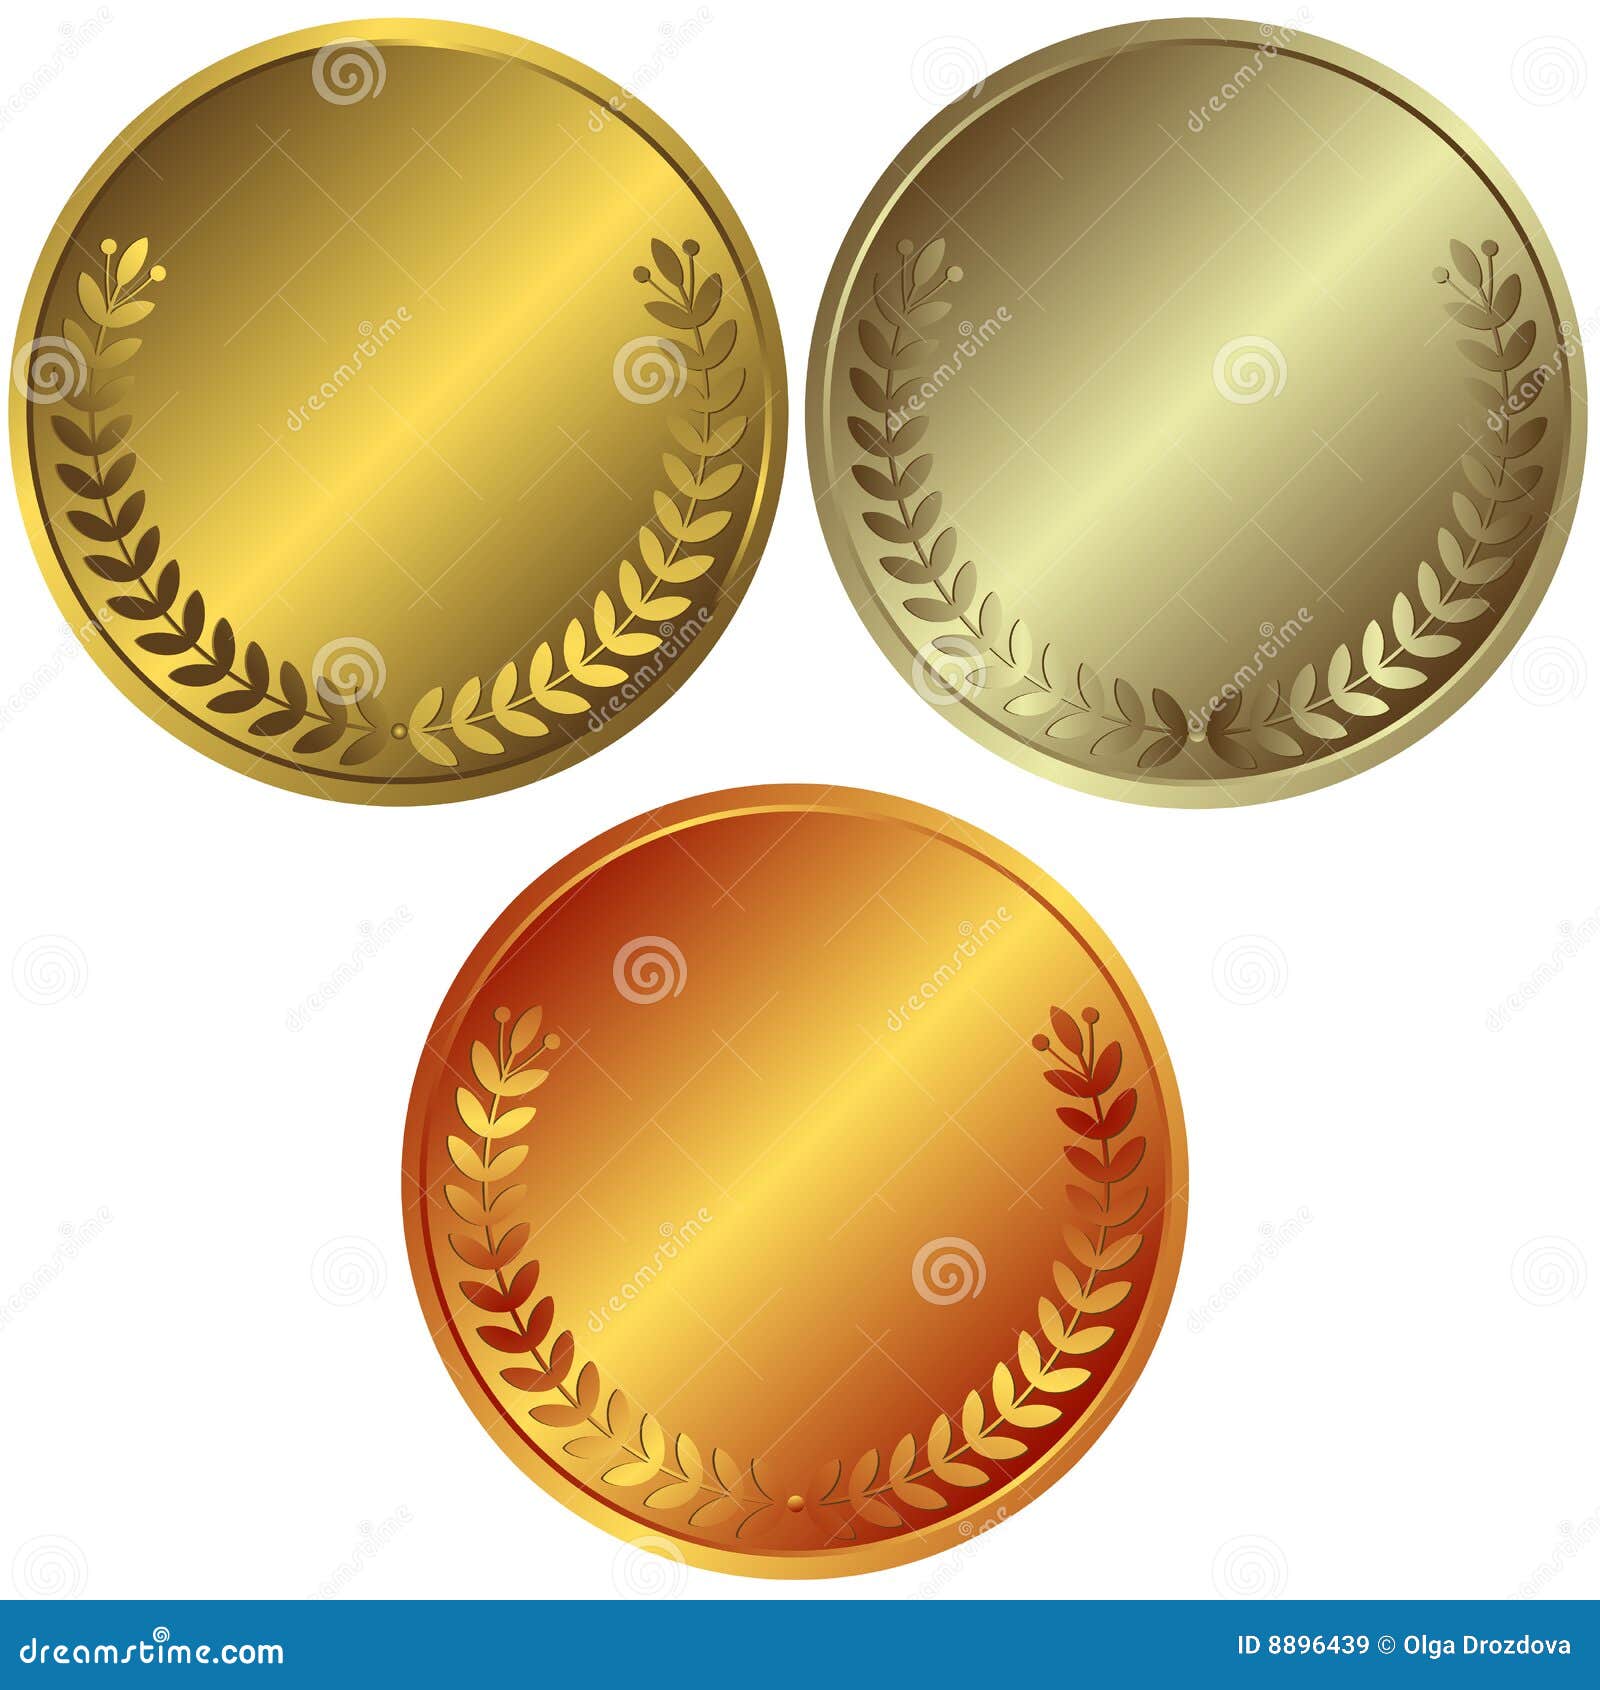 1 золотая 2 серебряные 2 бронзовые. Золото серебро бронза. Золотая серебряная и бронзовая монета. Медали золото серебро бронза. Золотая серебряная и бронзовая медаль.